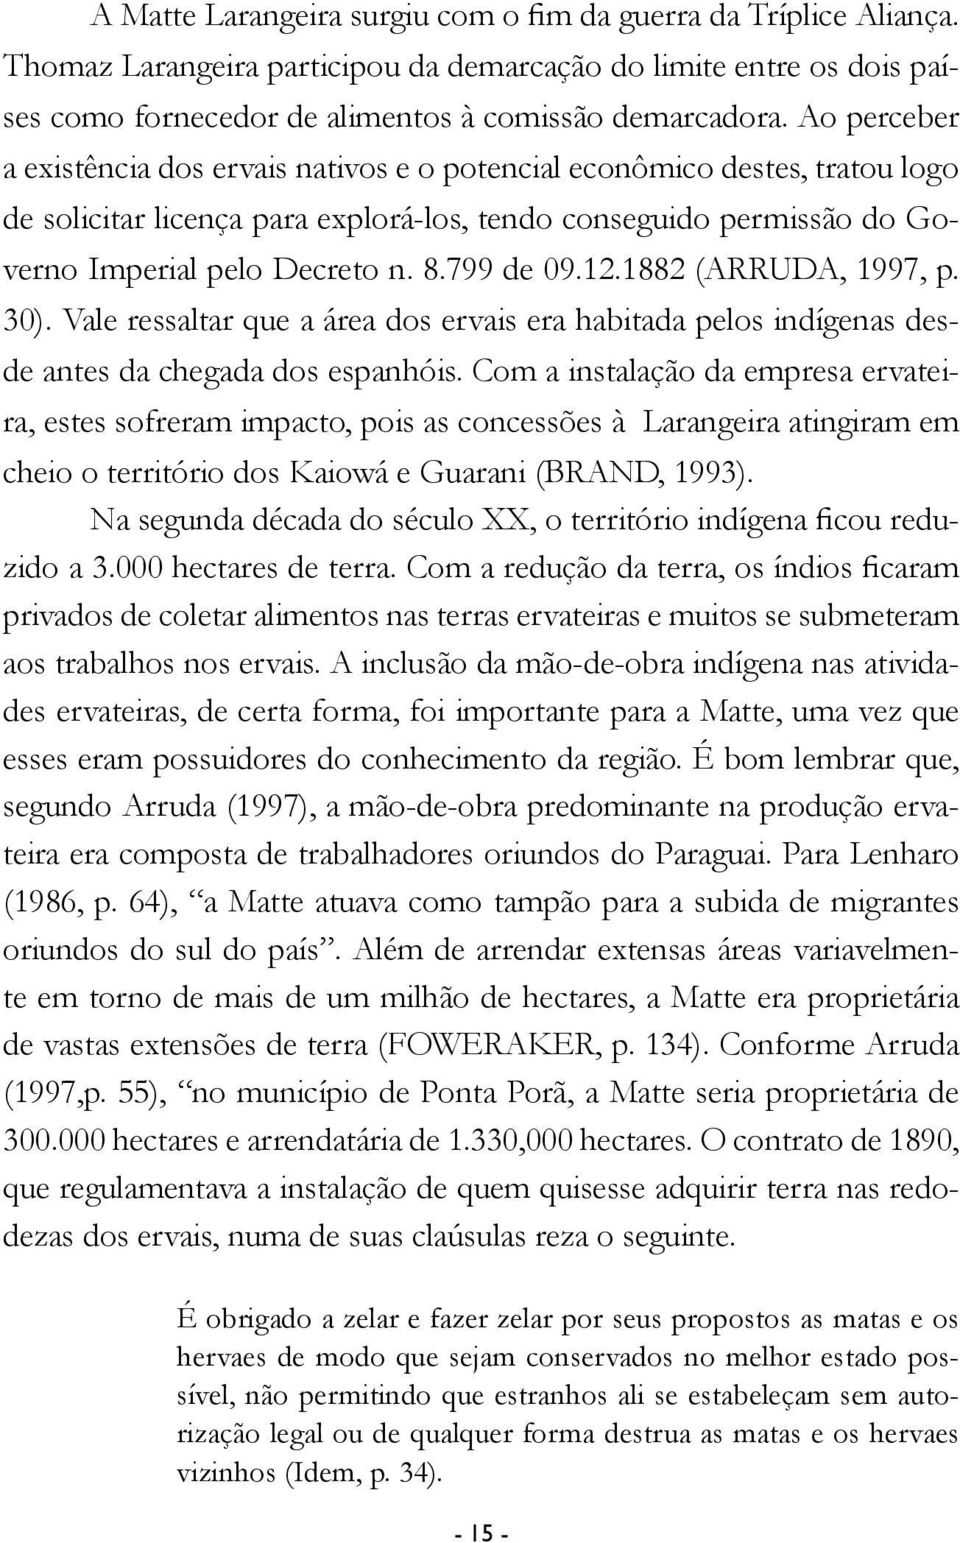 799 de 09.12.1882 (ARRUDA, 1997, p. 30). Vale ressaltar que a área dos ervais era habitada pelos indígenas desde antes da chegada dos espanhóis.